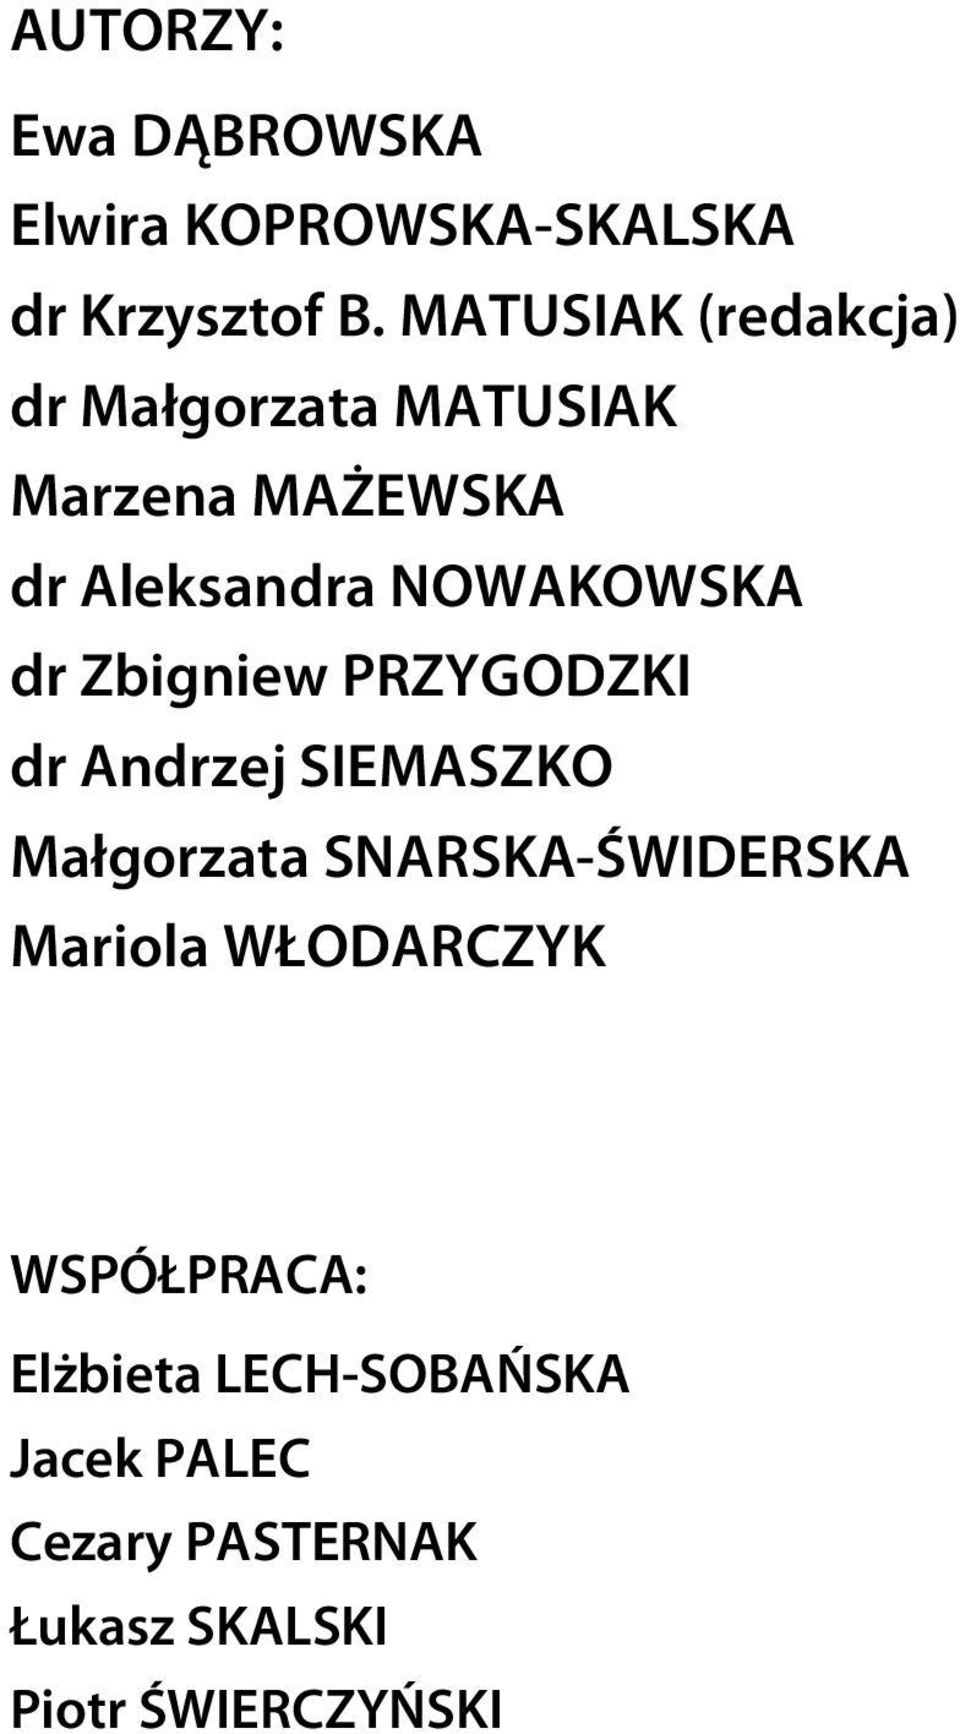 dr Zbigniew PRZYGODZKI dr Andrzej SIEMASZKO Małgorzata SNARSKA-ŚWIDERSKA Mariola